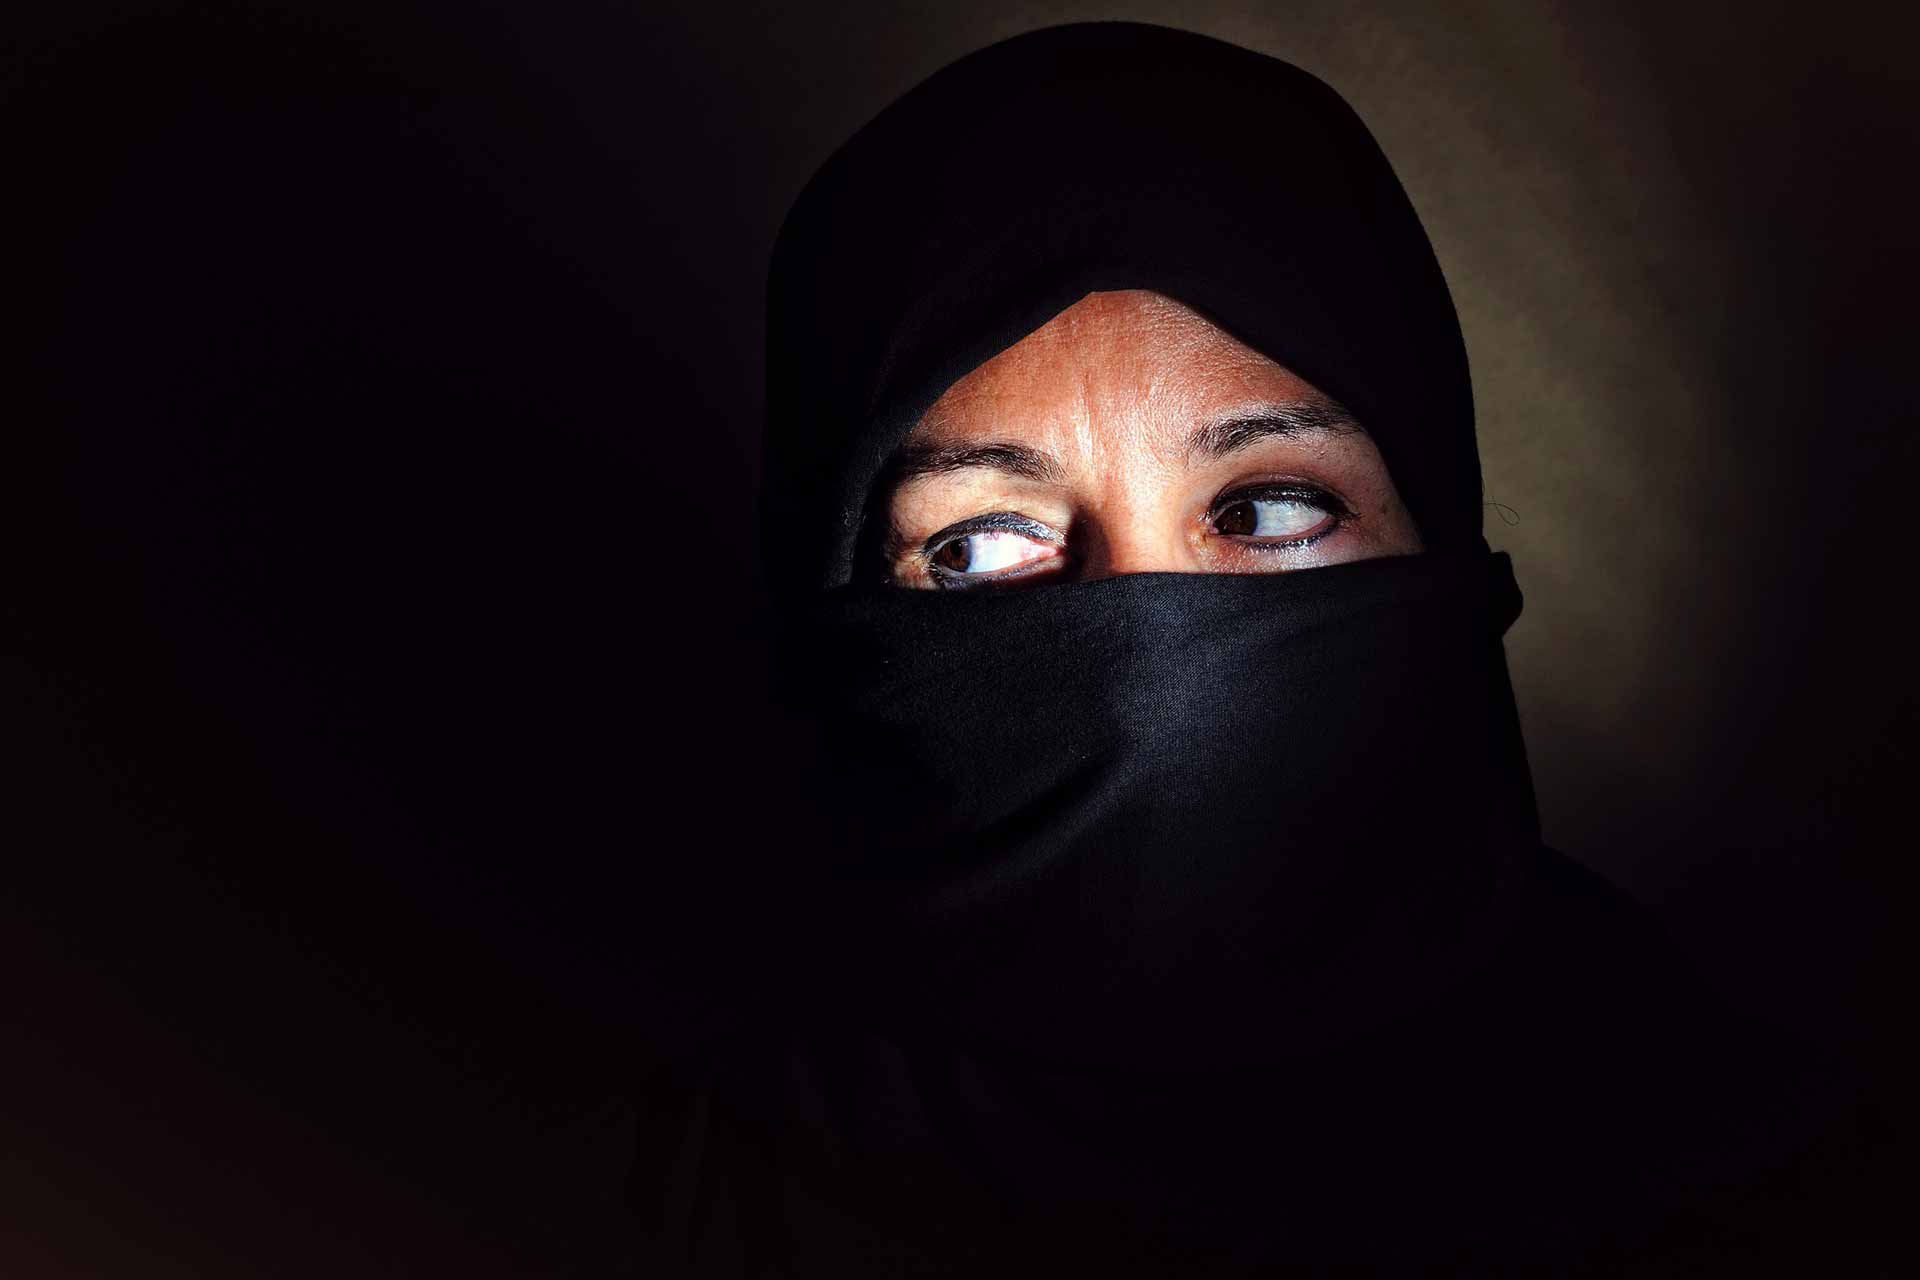 Islam Muslim woman